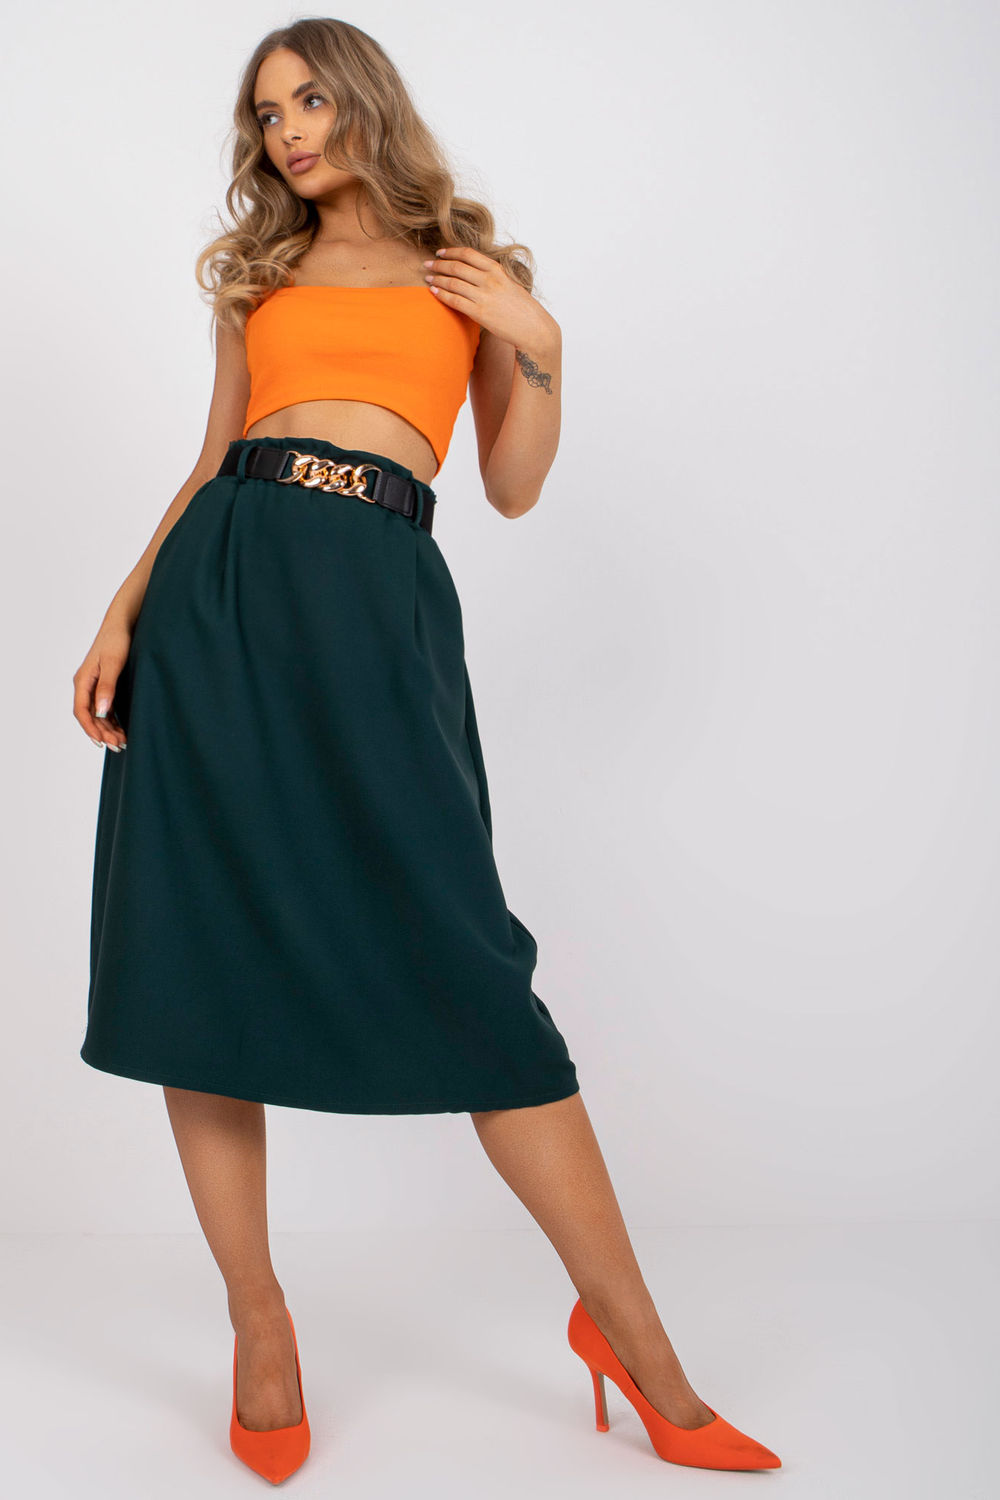 Skirt model 167487 Elsy Style Skirts